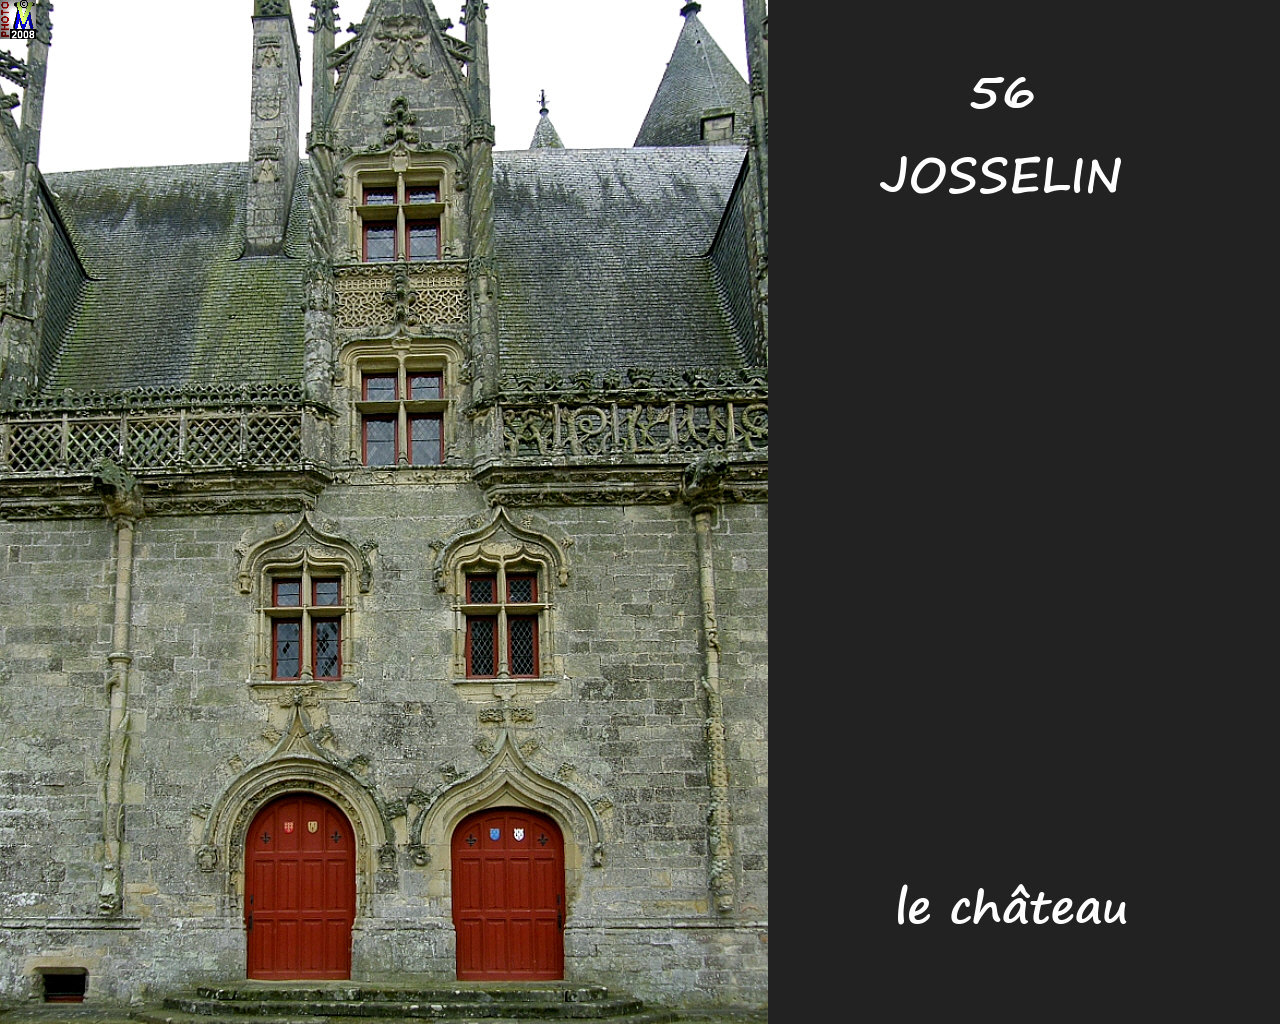 56JOSSELIN_chateau_232.jpg